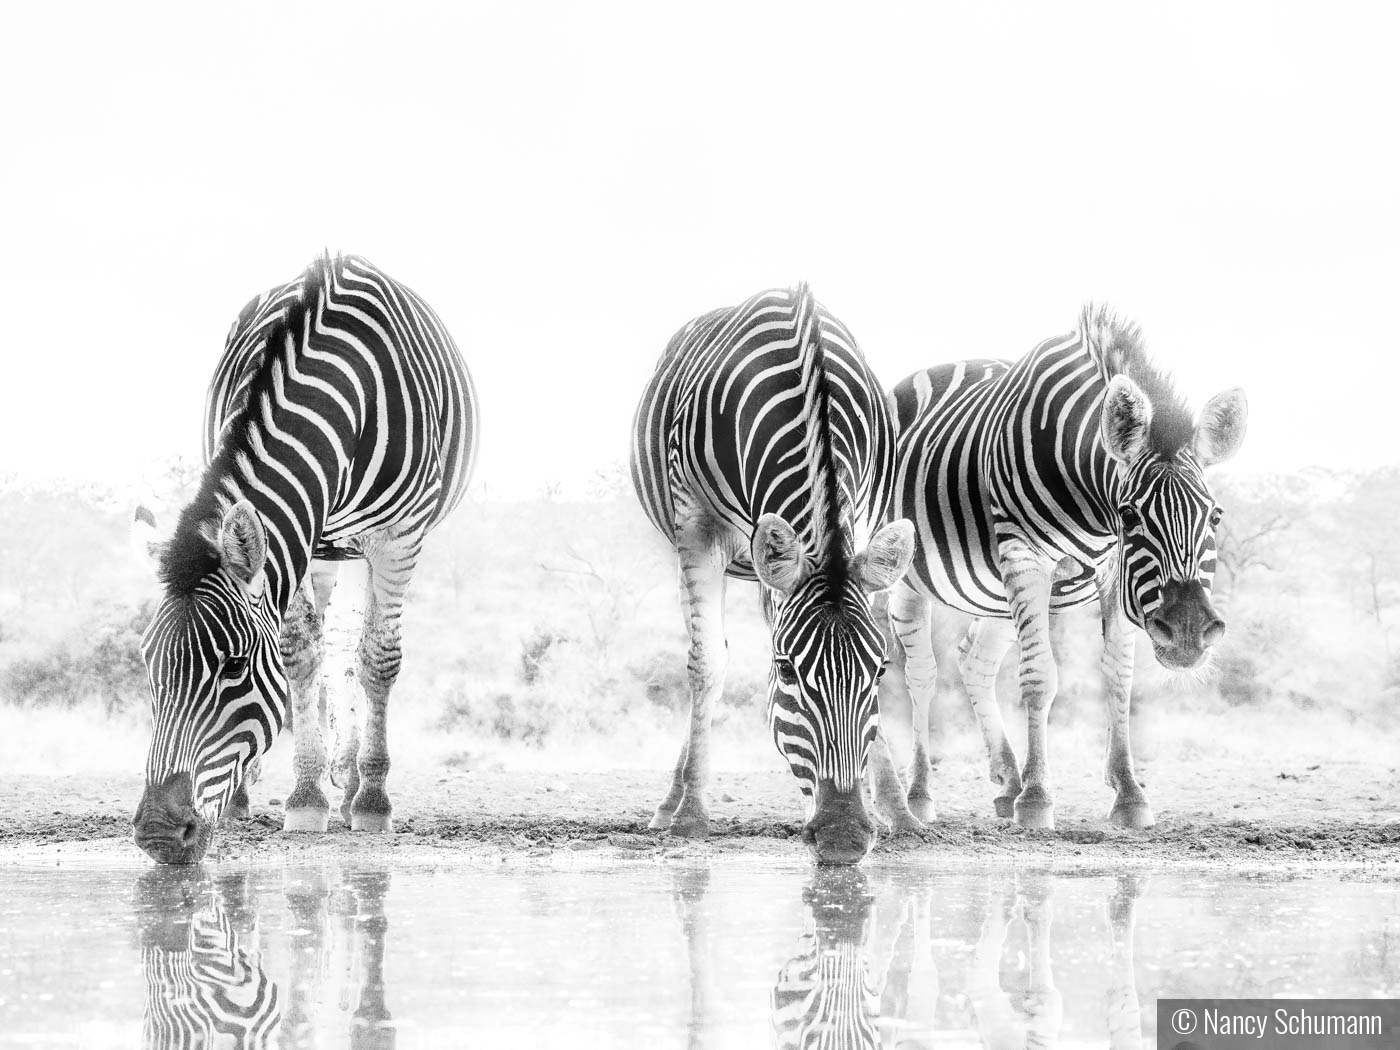 Zimanga Zebras by Nancy Schumann